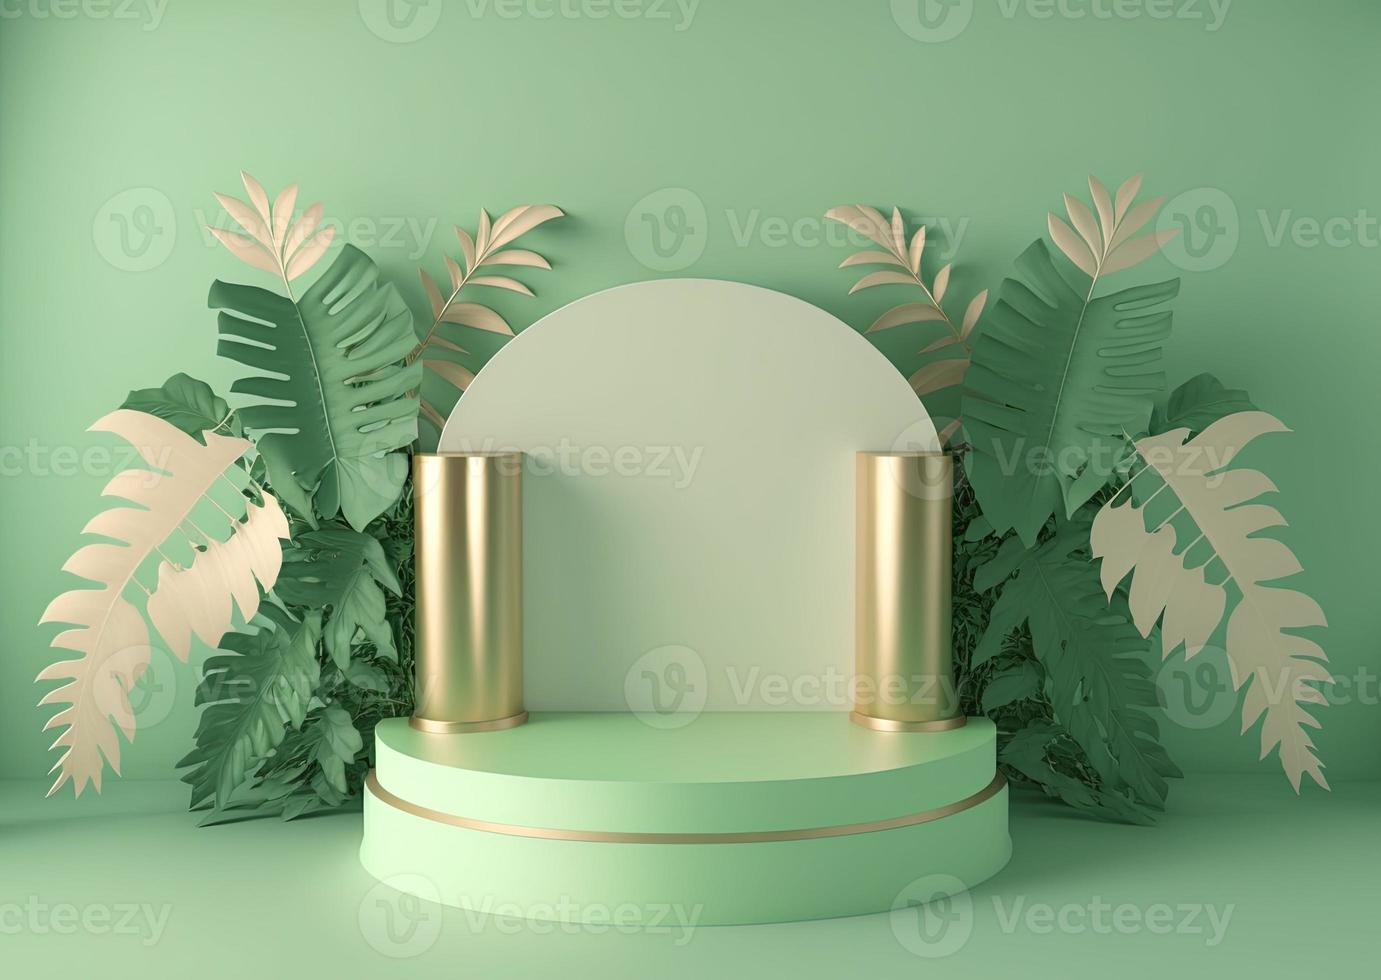 ilustración realista en 3d de podio verde pastel con hojas alrededor para el podio del producto foto